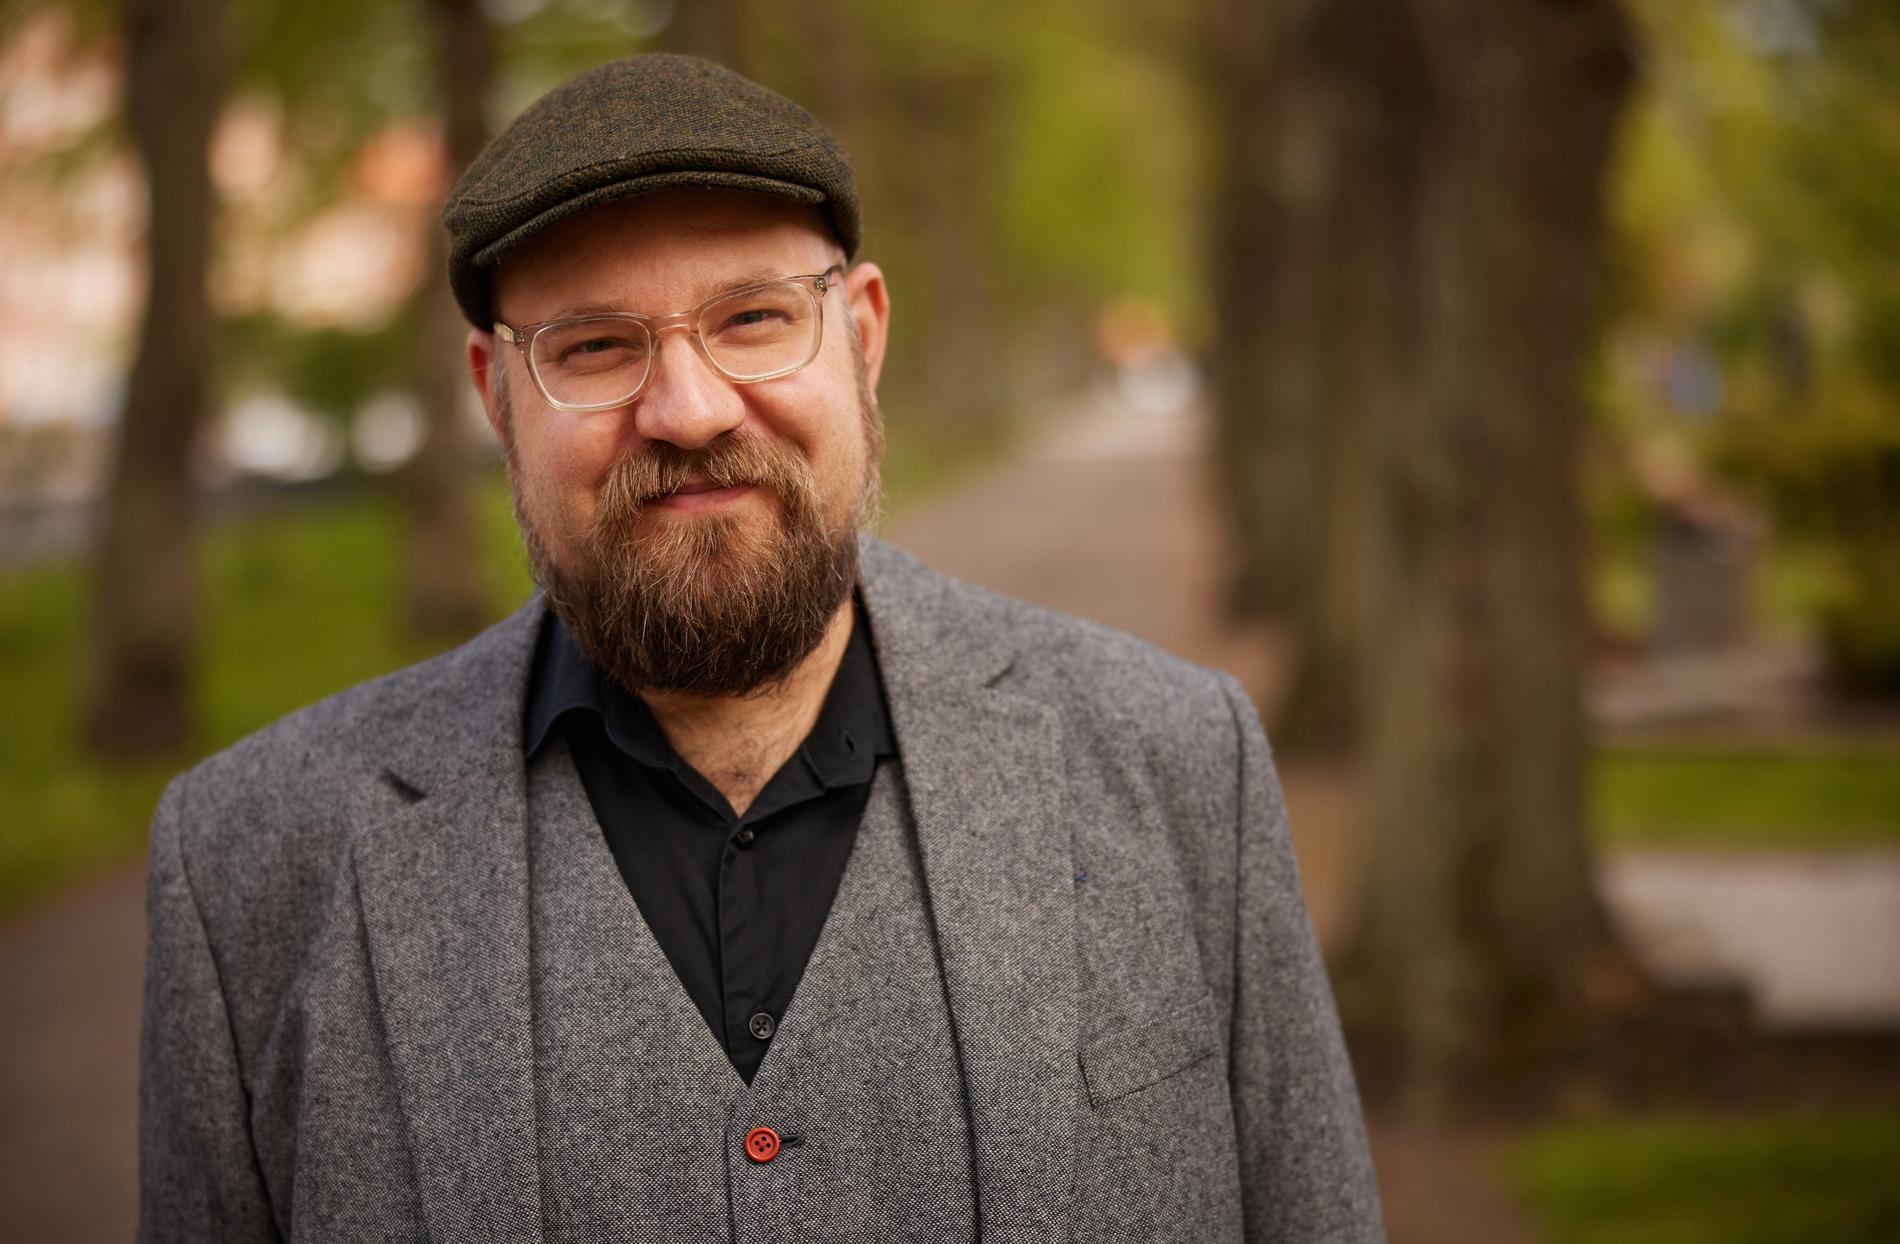 Radioproducenten Olof Åkerlund tilldelas Axel Liffner-stipendiet som delas ut av Aftonbladets kulturredaktion.